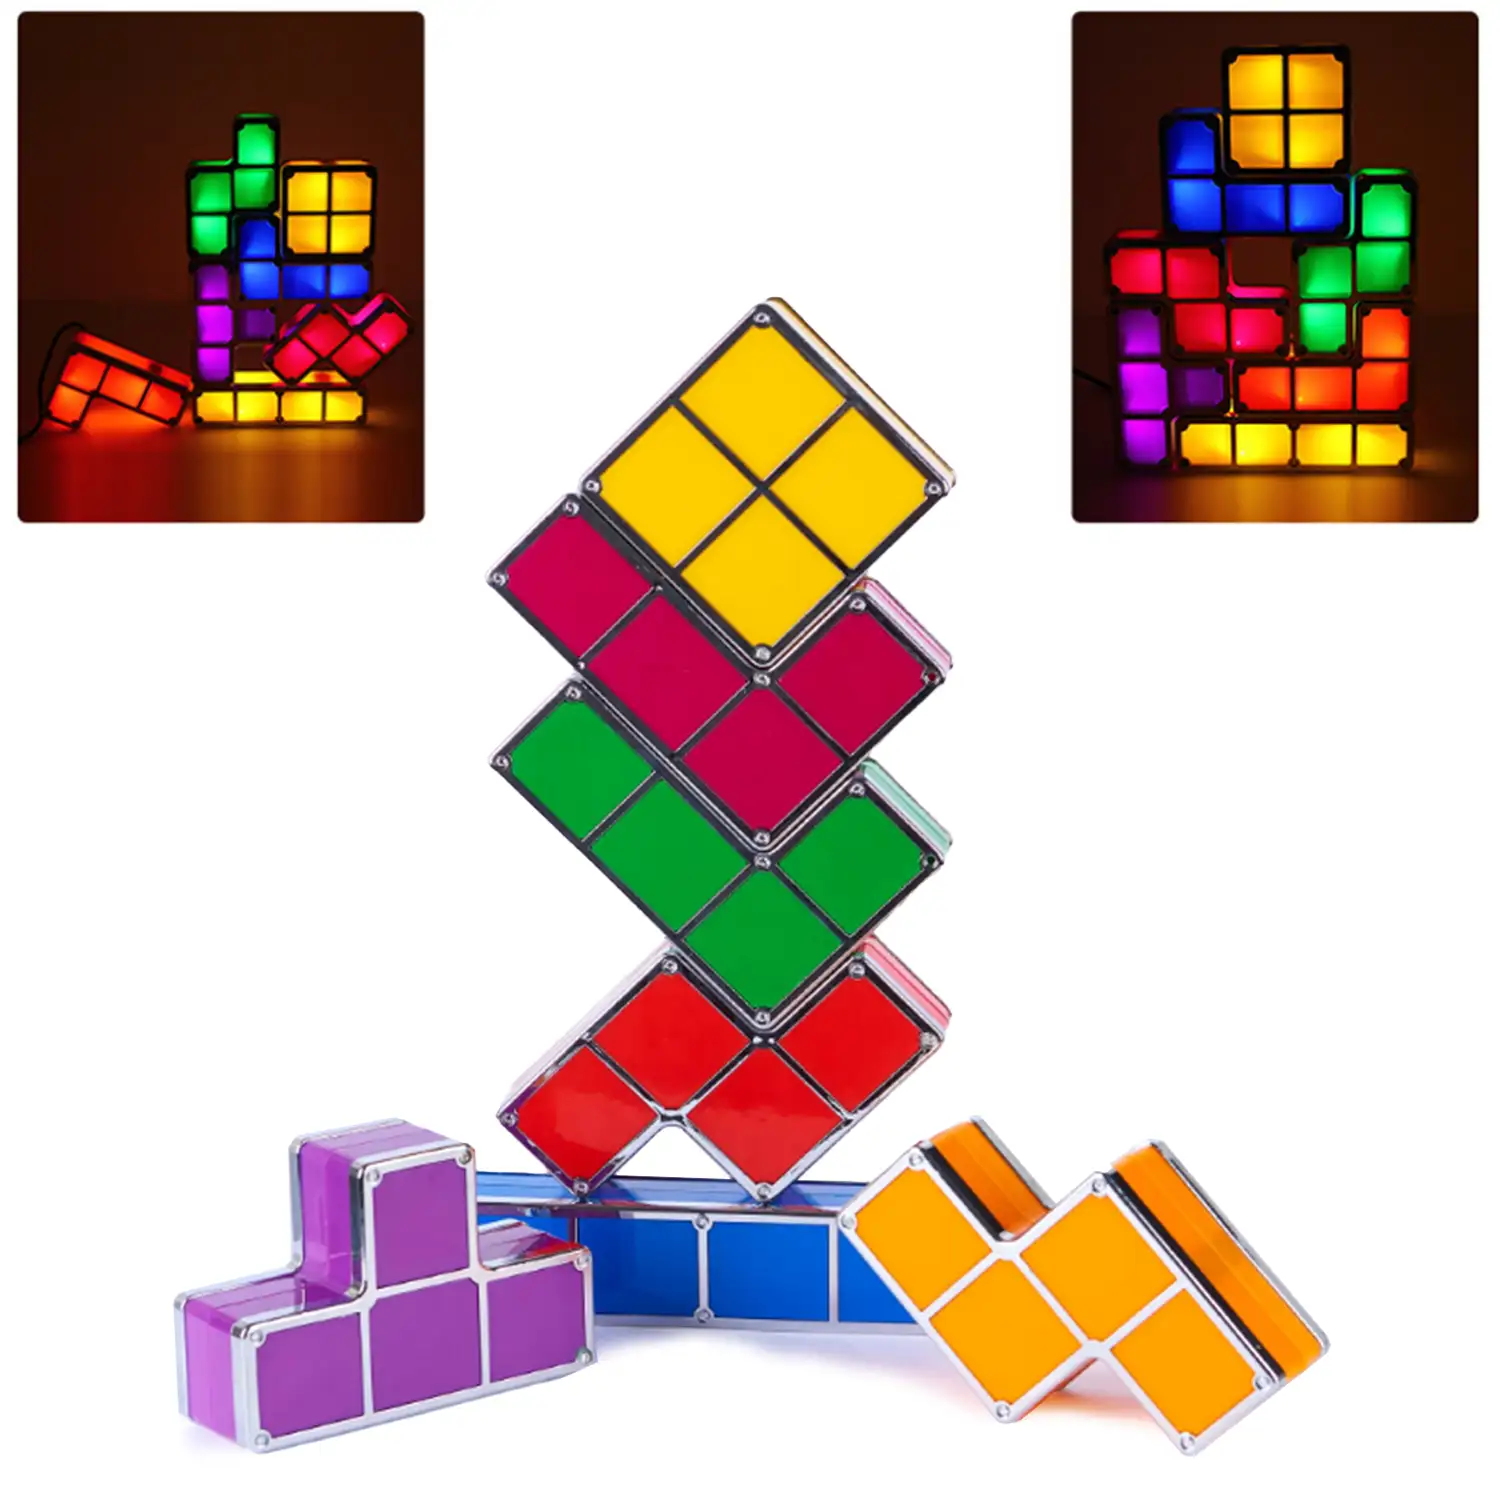 Lámpara retro Tetris LED multicolor. Junta las piezas y se iluminarán, crea formas libremente.